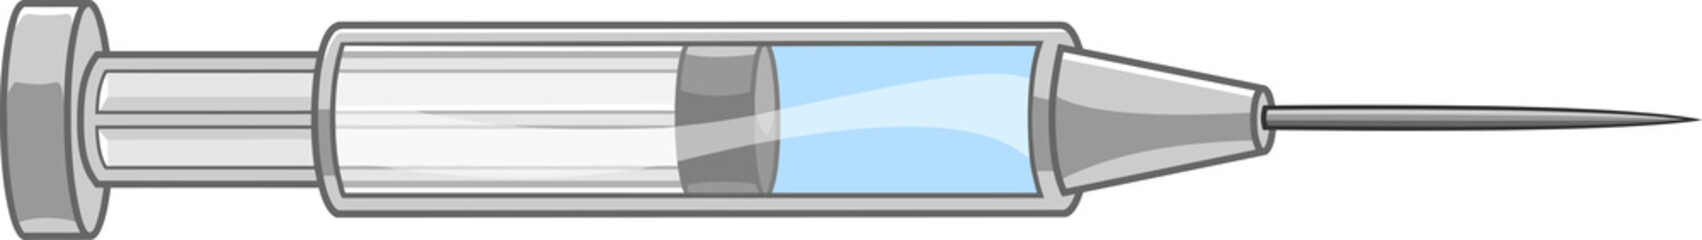 Cartoon Syringe. Hand Drawn Illustration Isolated On Transparent Background